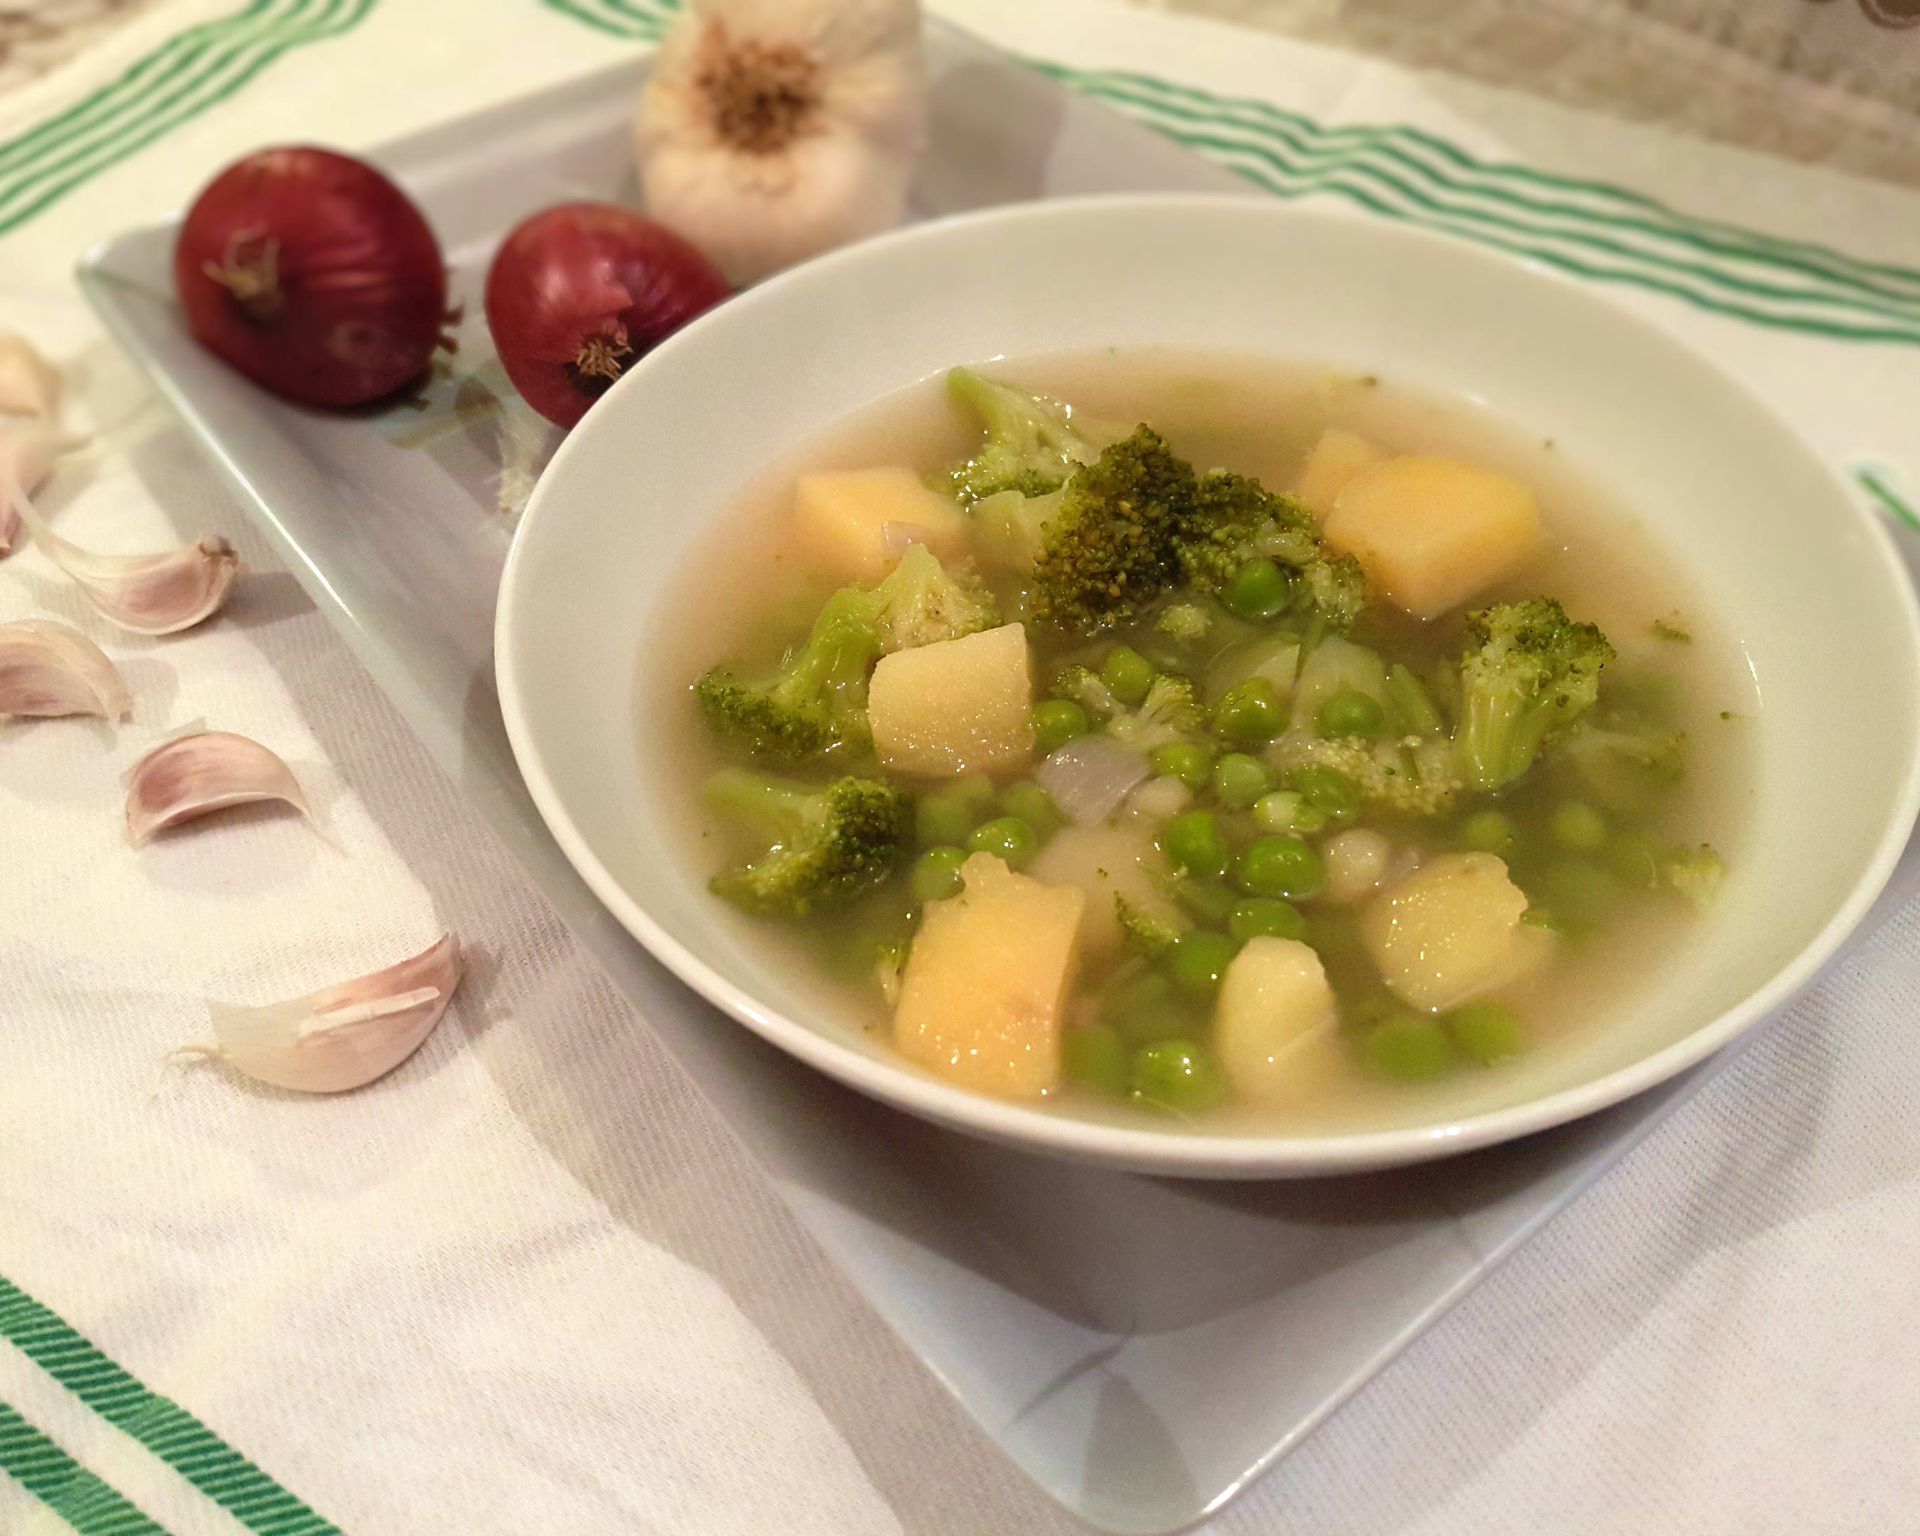 Tanier plný zelenej polievky s hrachom, brokolicou a zemiakmi, v pozadí cesnak, červená cibuľka